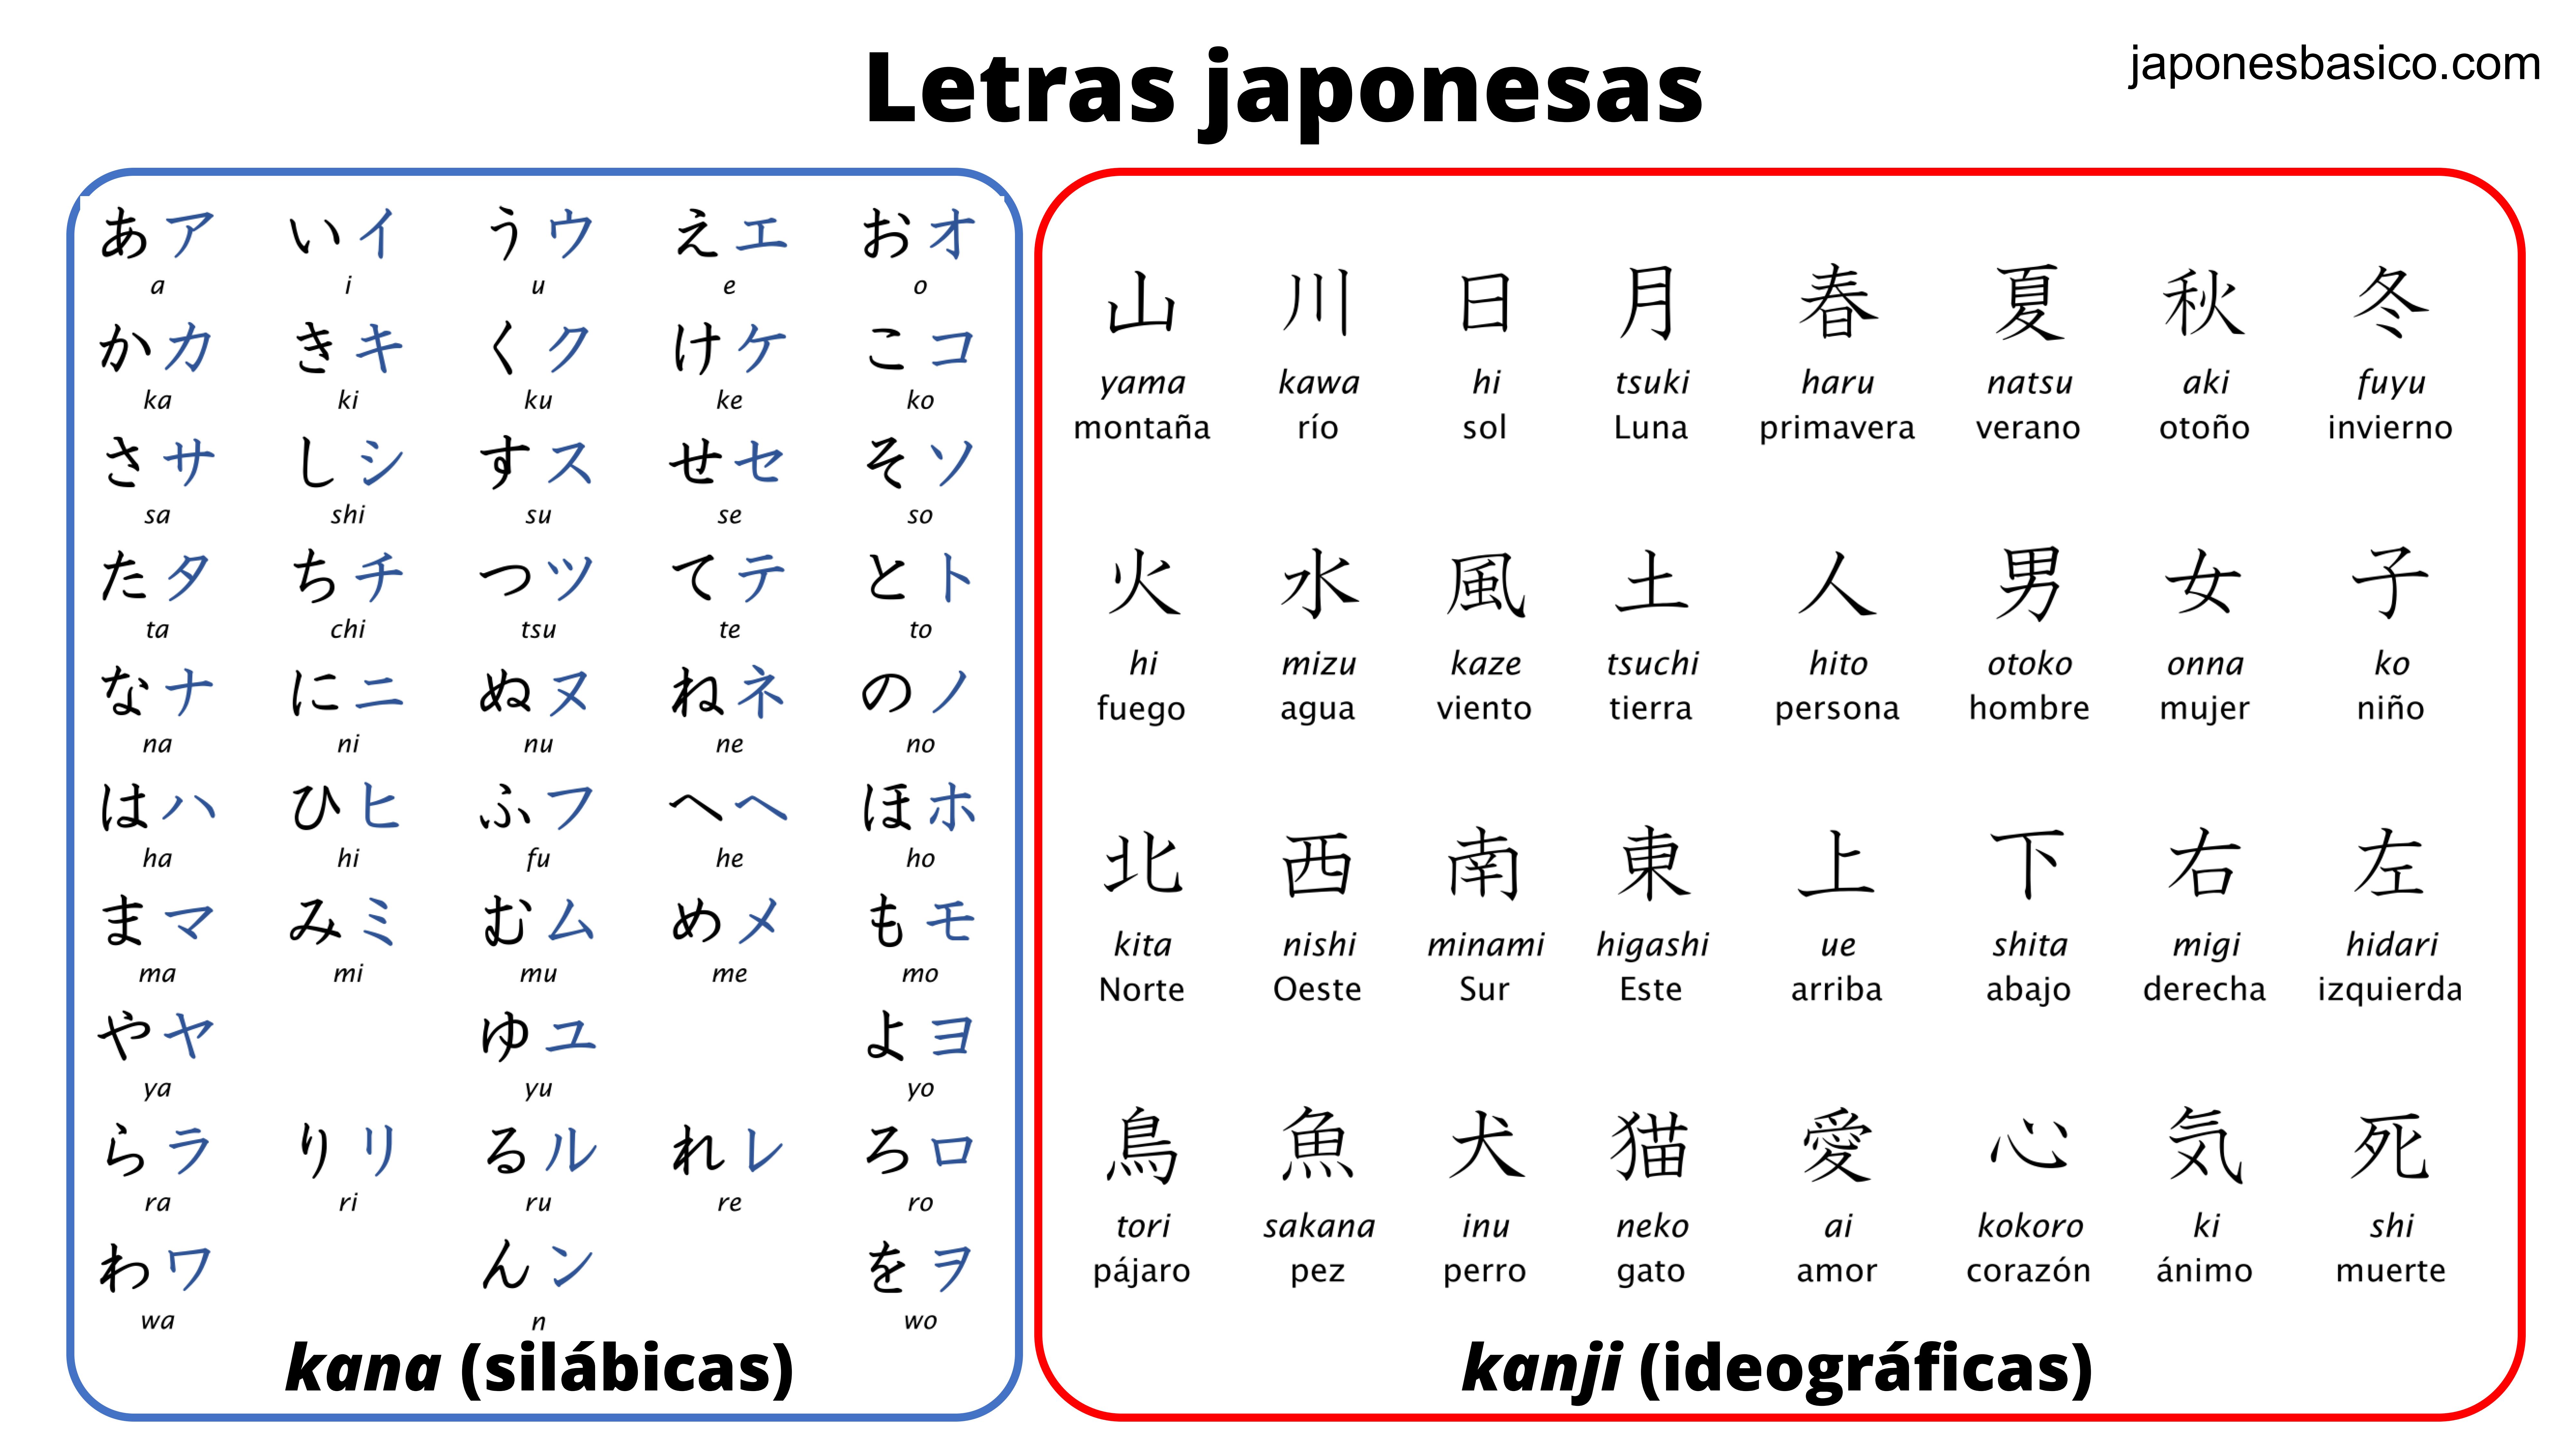 ¿Cómo son las letras japonesas?